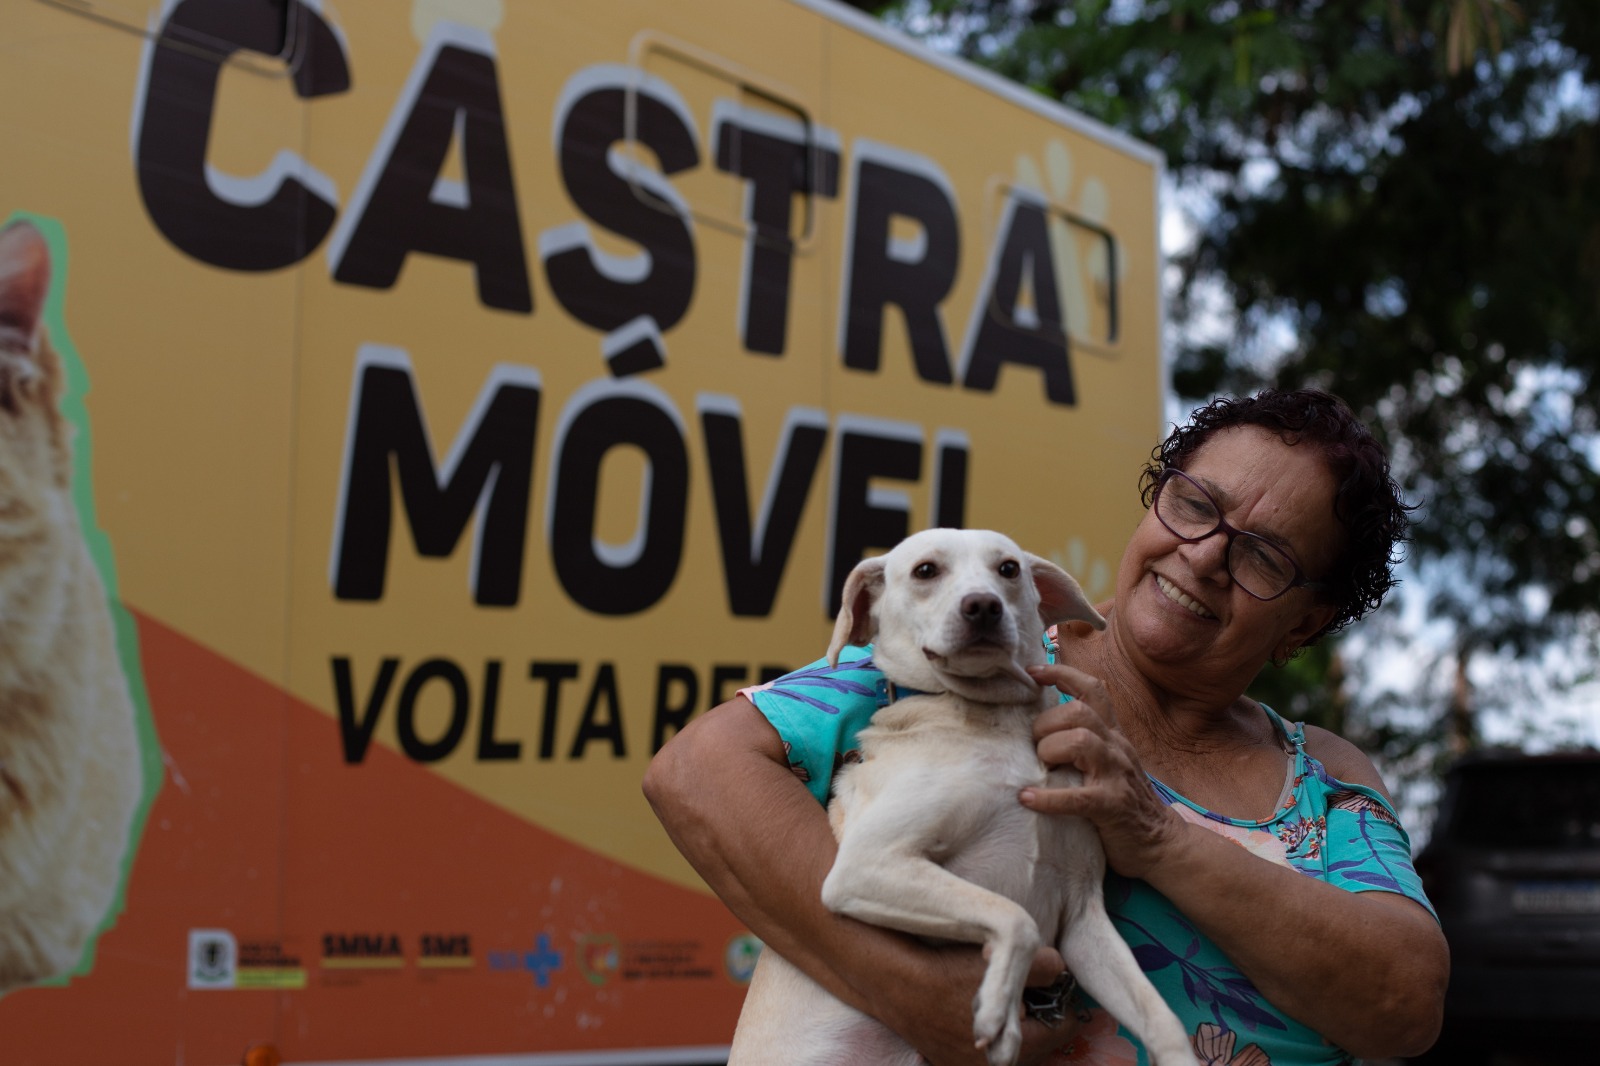 Castramóvel Volta Redonda: 160 vagas serão oferecidas para animais dos bairros Vila Rica e Jardim Tiradentes